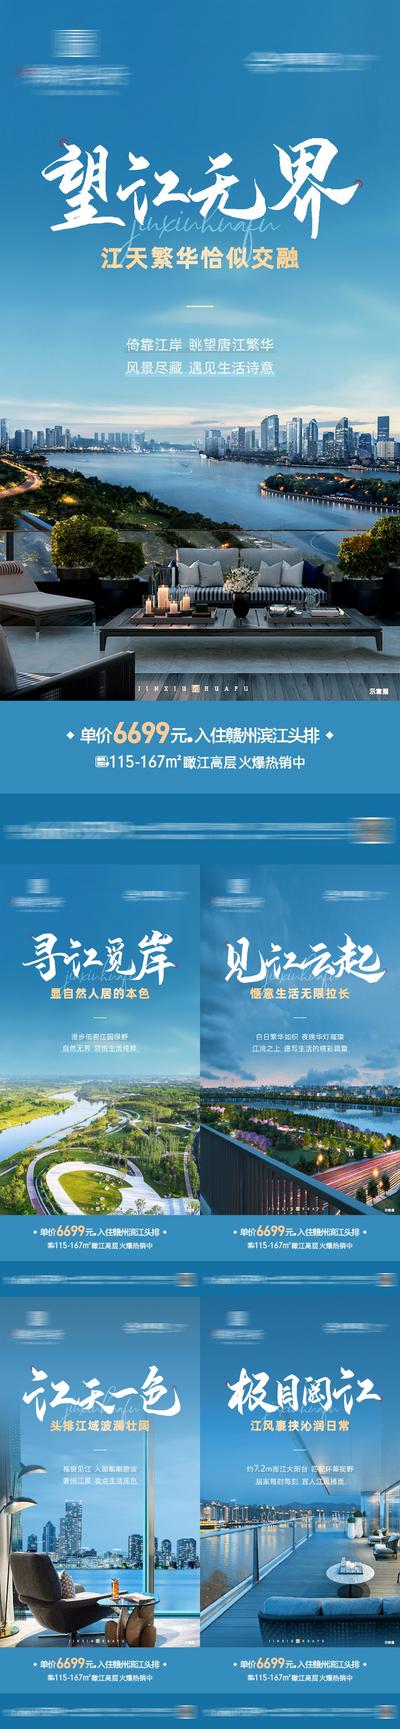 南门网 海报 房地产 江景 繁华 户型 品质 价值点 系列